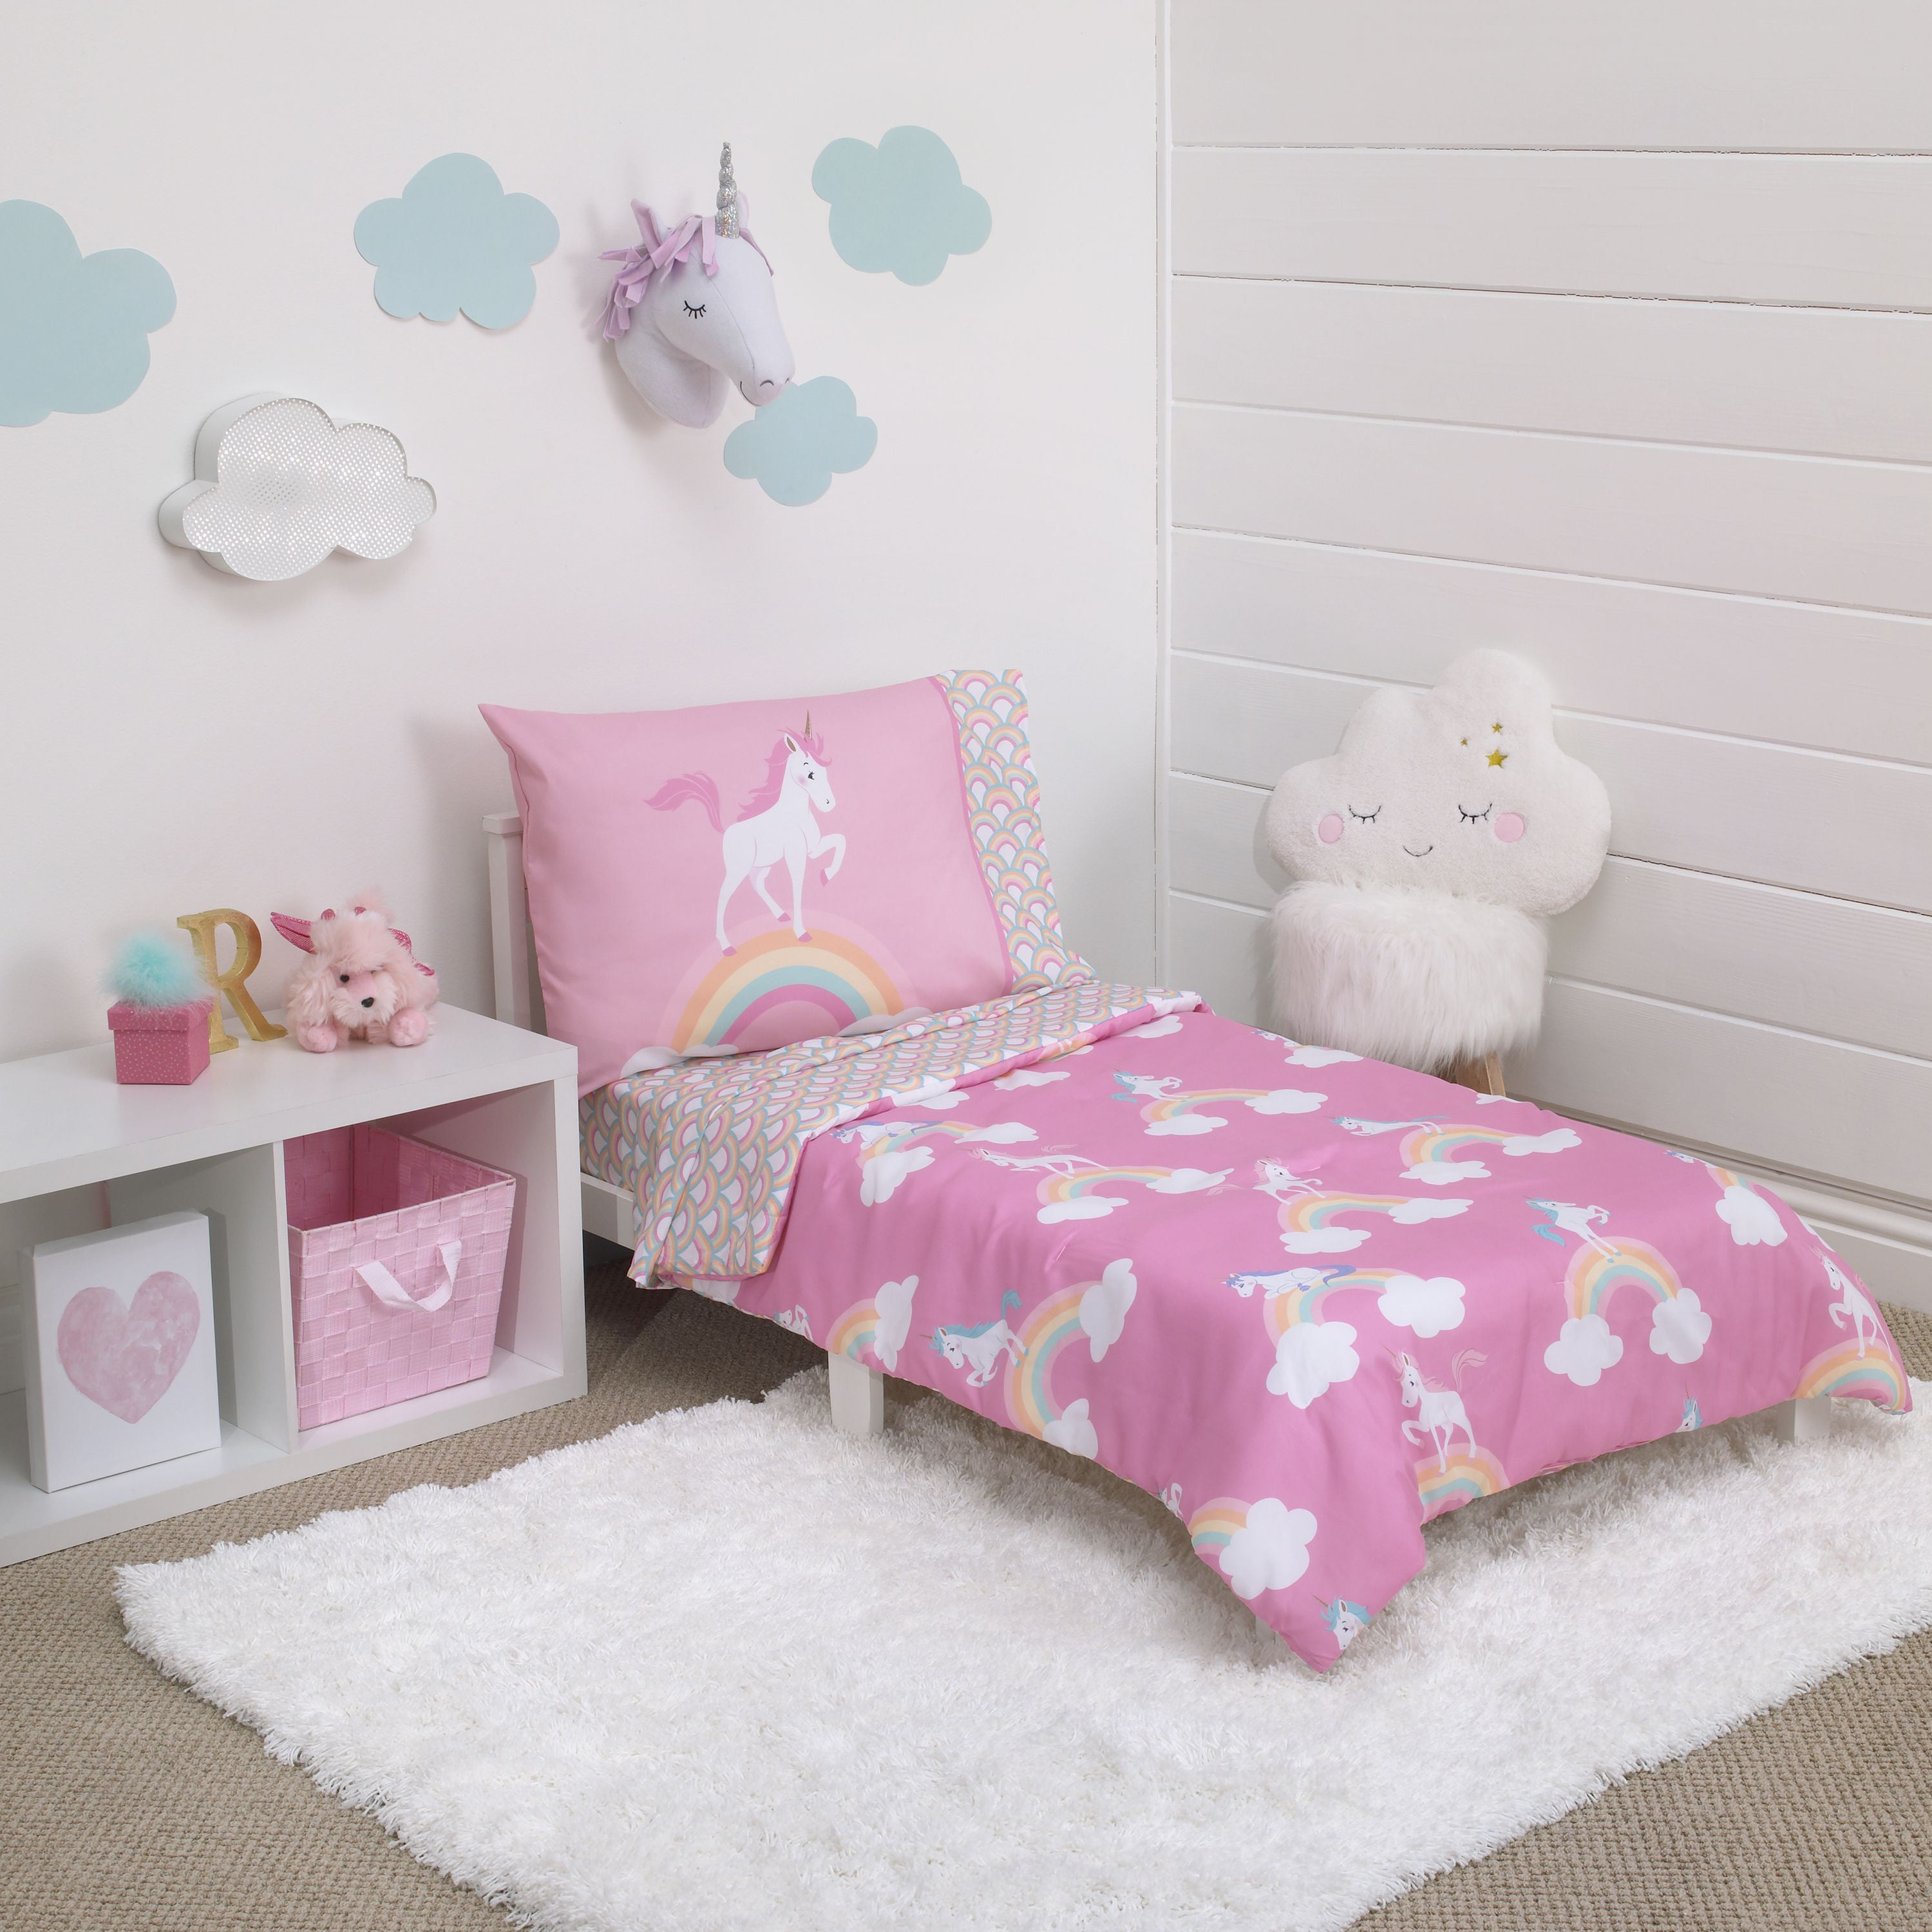 Кровать единорог. Кровать Единорог для девочки. Комната с единорогами для девочек. Интерьер детской для девочки с единорогом. Розовая комната с единорогами.